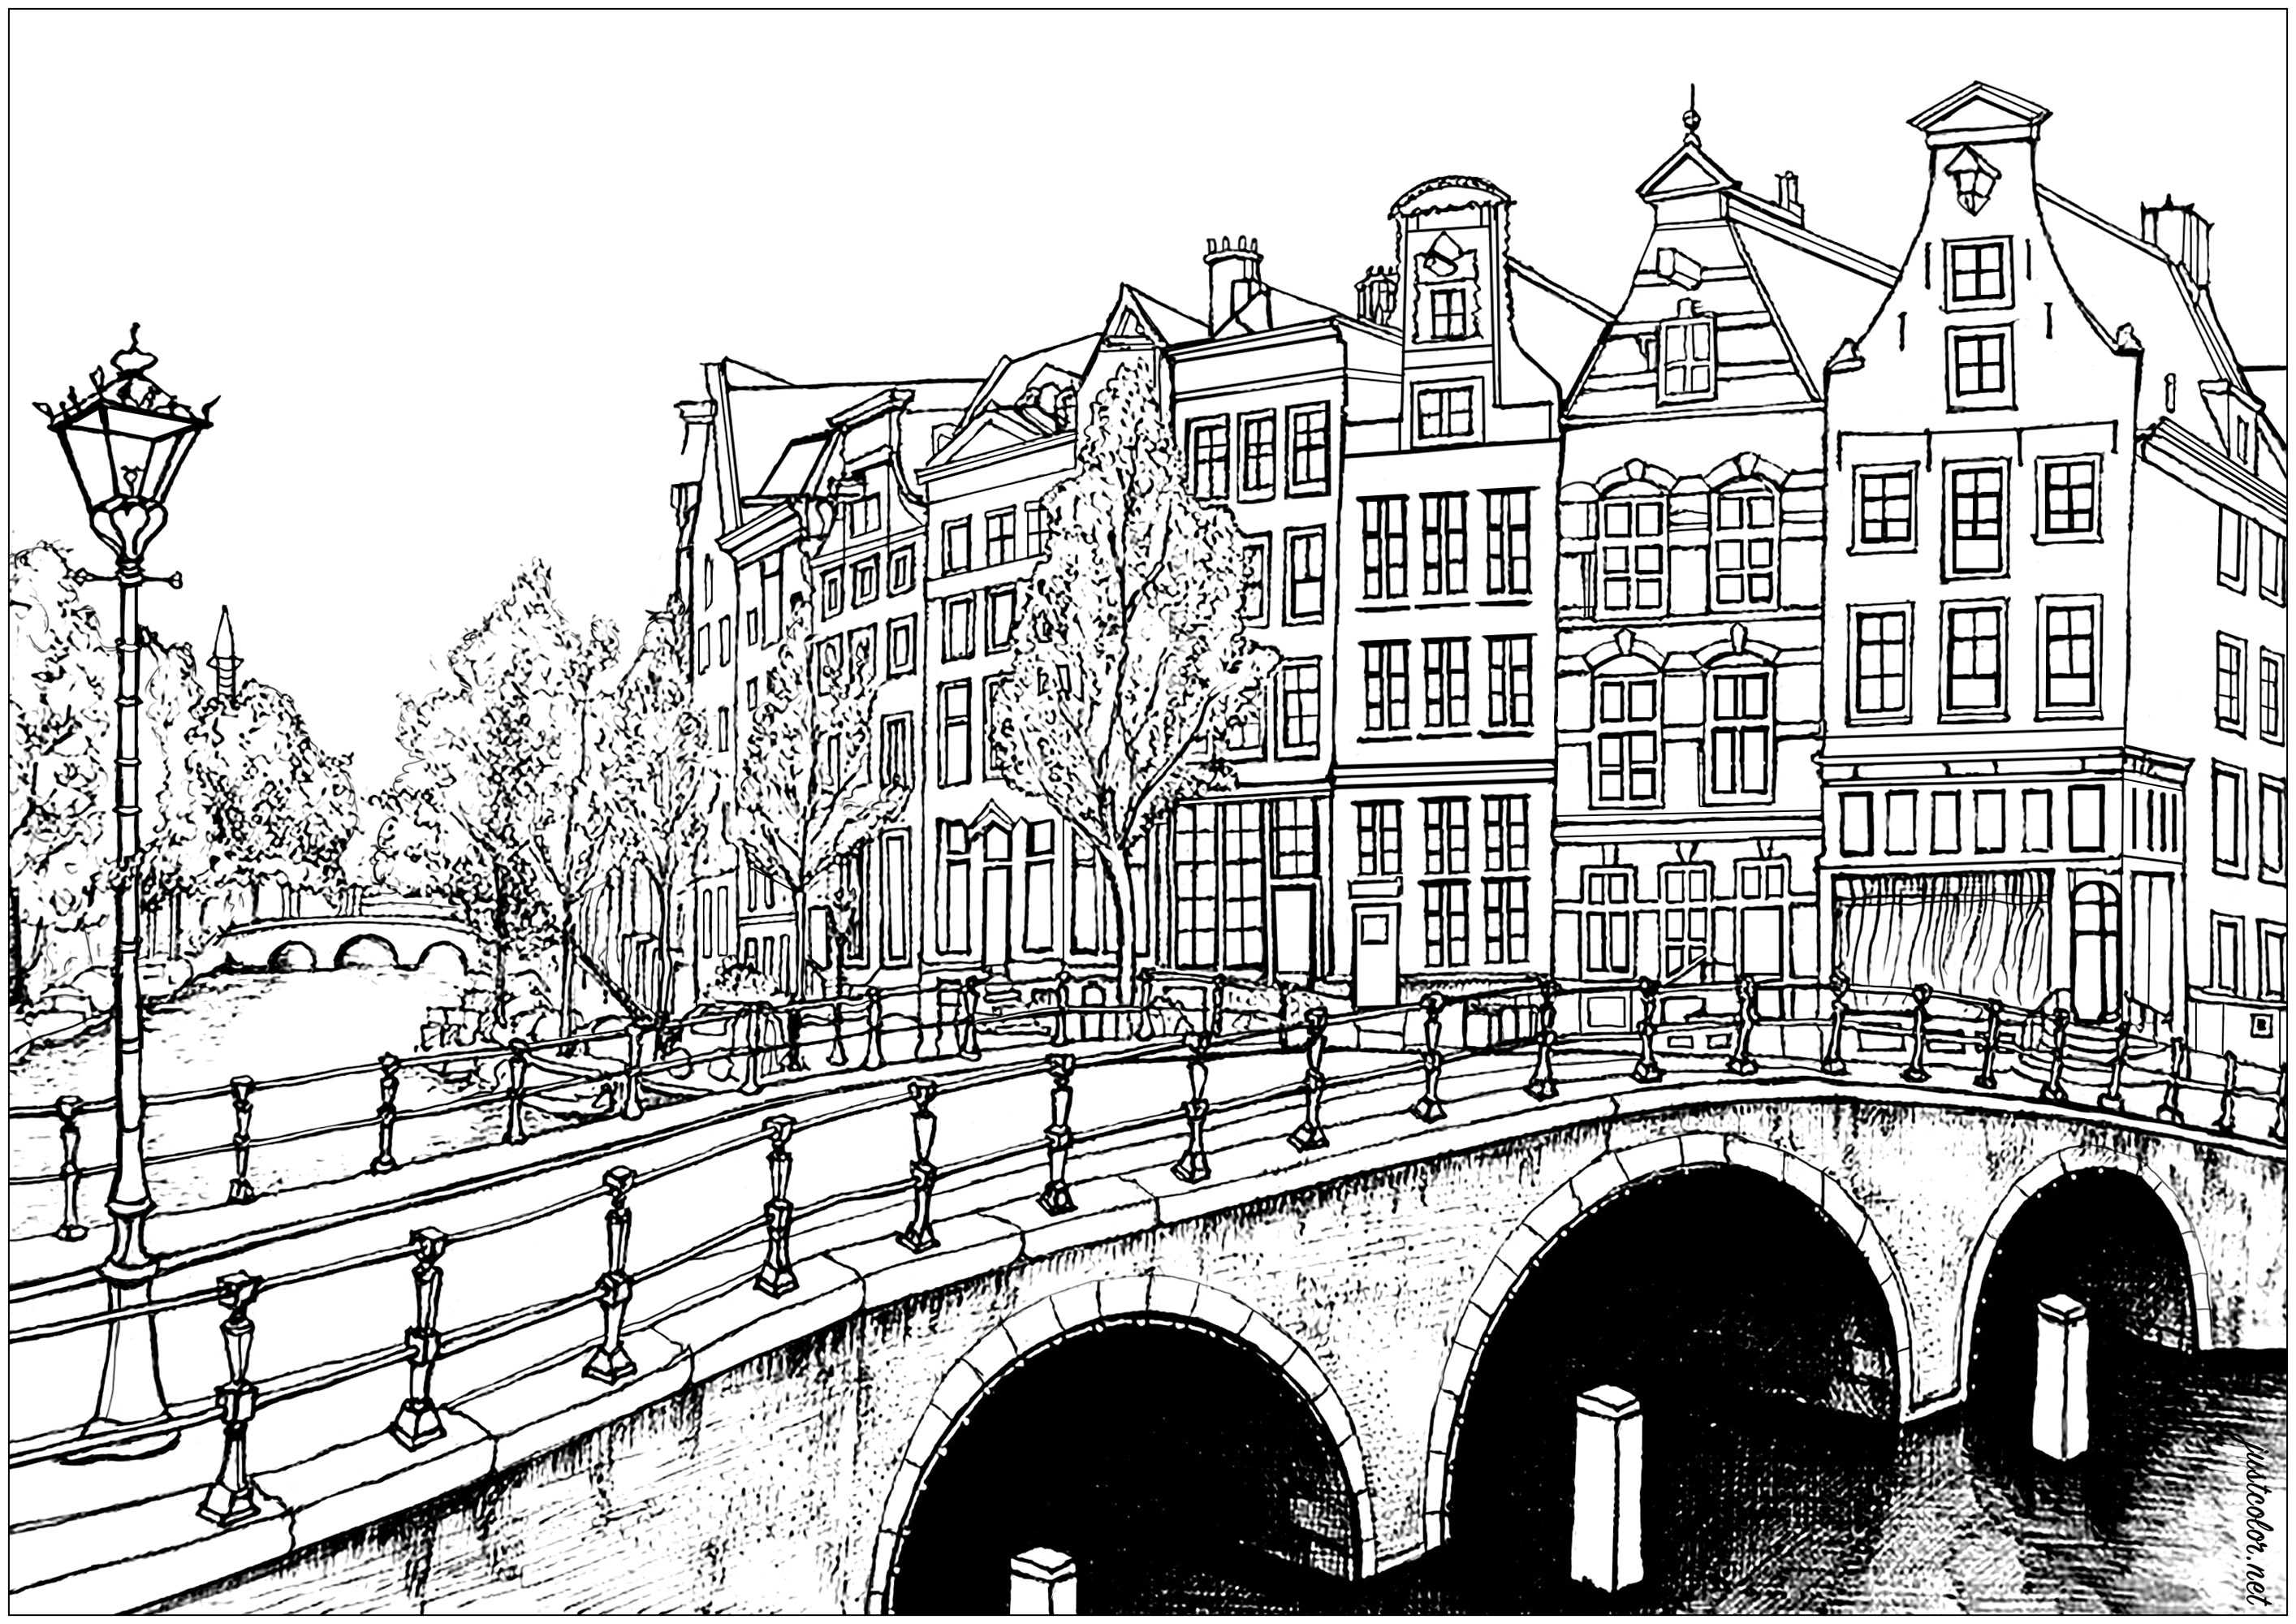 Case e ponti di Amsterdam. Con oltre 165 canali, è possibile percorrere 100 chilometri sull'acqua all'interno della città. Eccellente è anche la presenza di 1281 ponti nella capitale olandese. Amsterdam ha la più alta concentrazione di musei per metro quadrato di tutte le città del mondo. I musei Van Gogh, Rijksmuseum e Stedelijk sono tra i più famosi che si possono visitare in questa incredibile città.